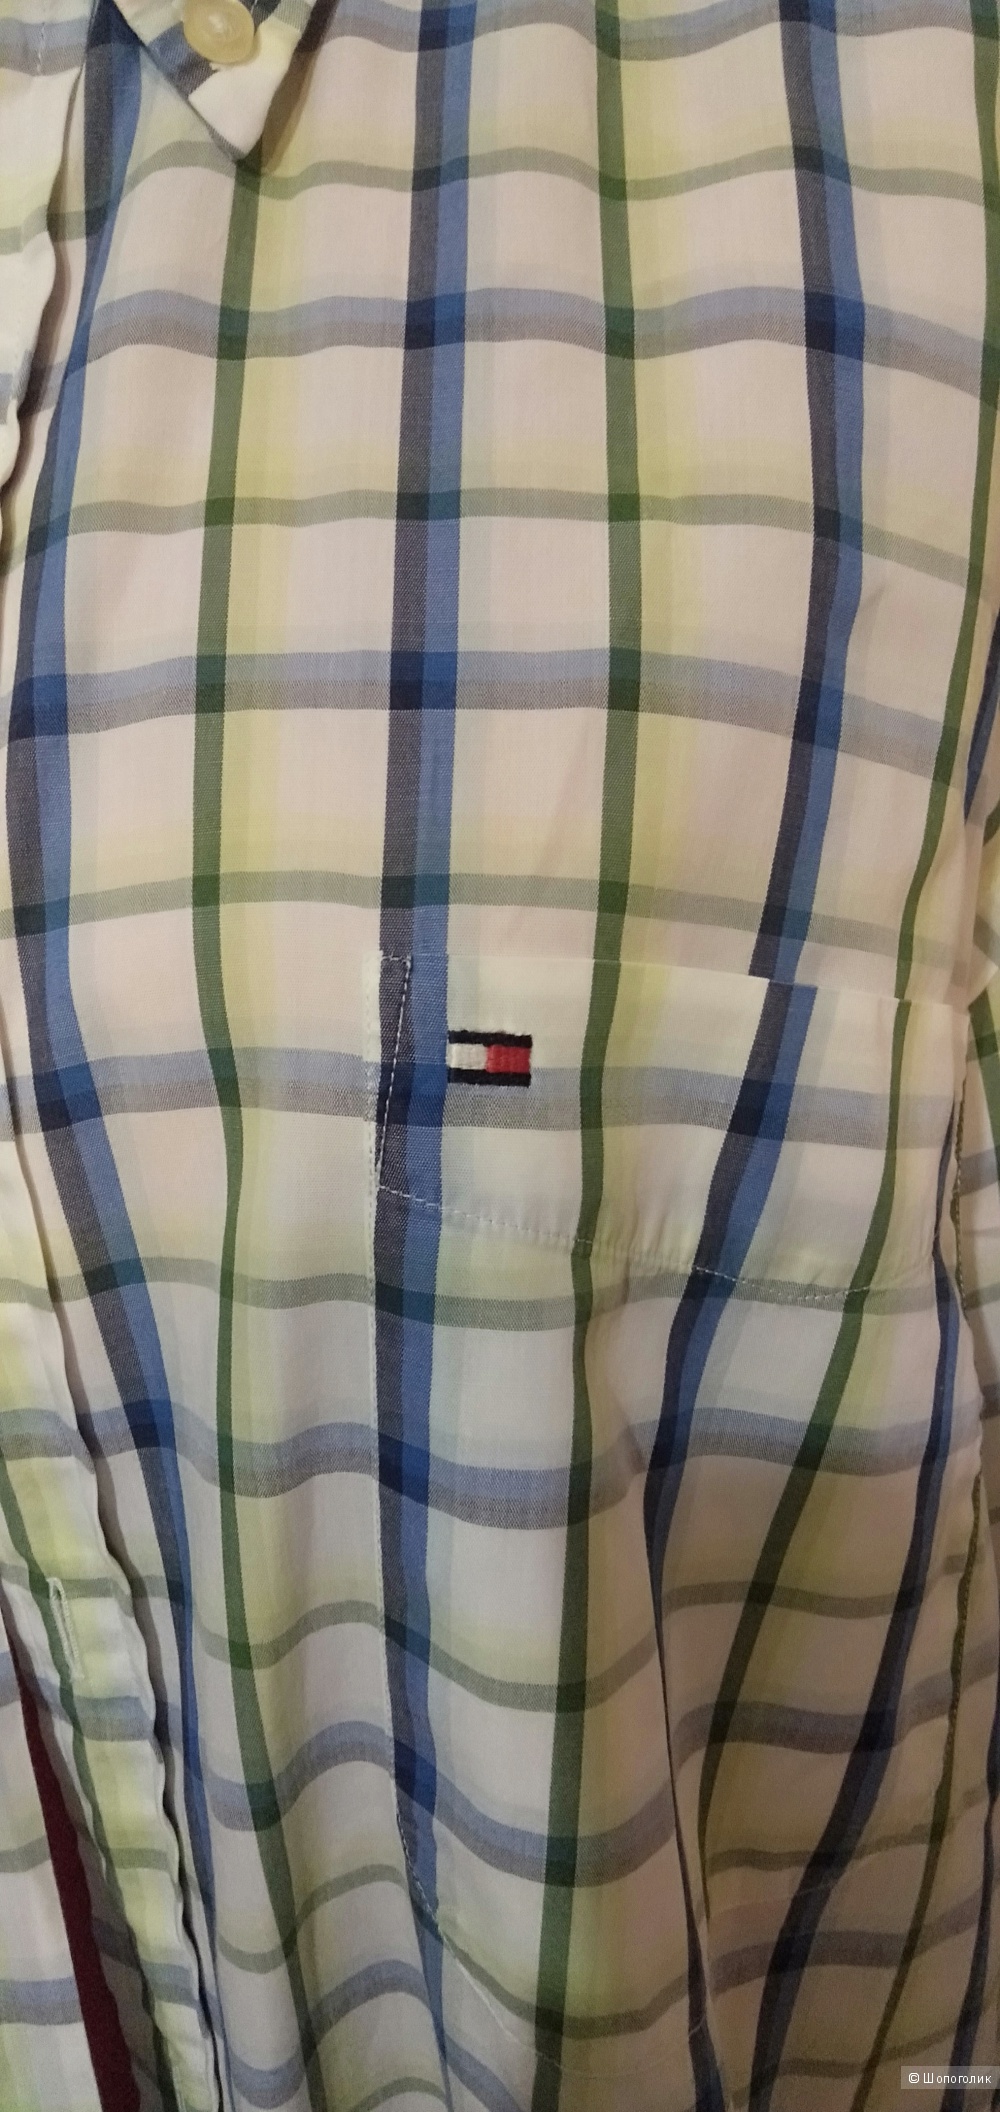 Рубашка мужская Tommy Hilfiger ,XXL и поло Ralph Lauren